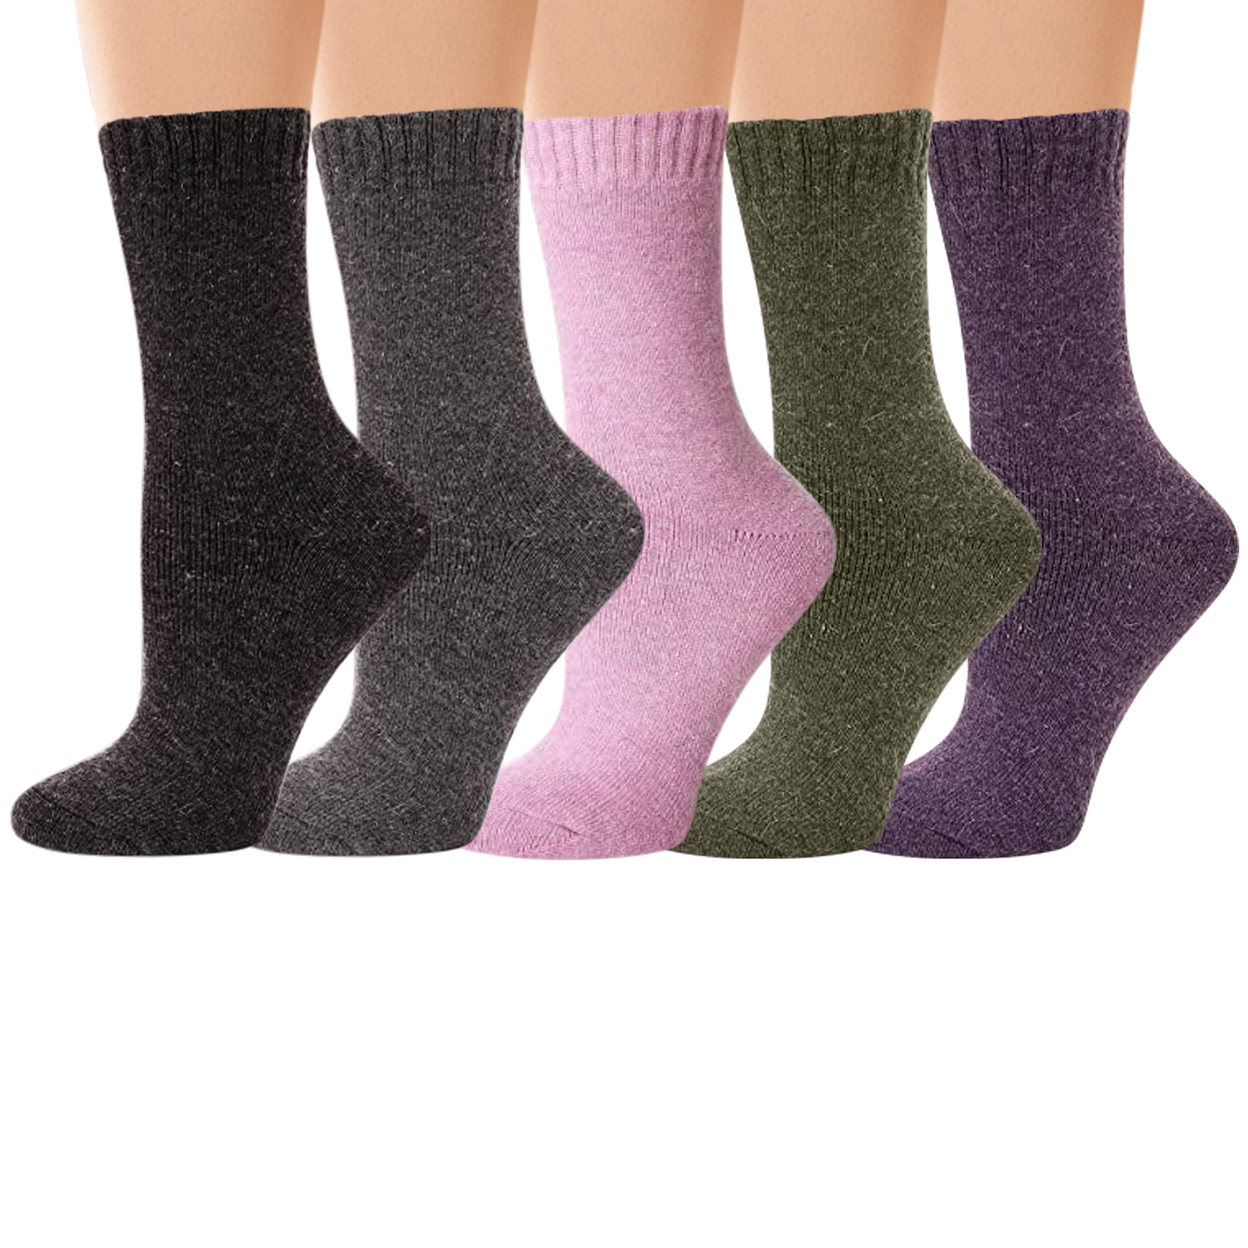 6-Pairs: Women's Warm Thick Merino Lamb Wool Winter Thermal Socks